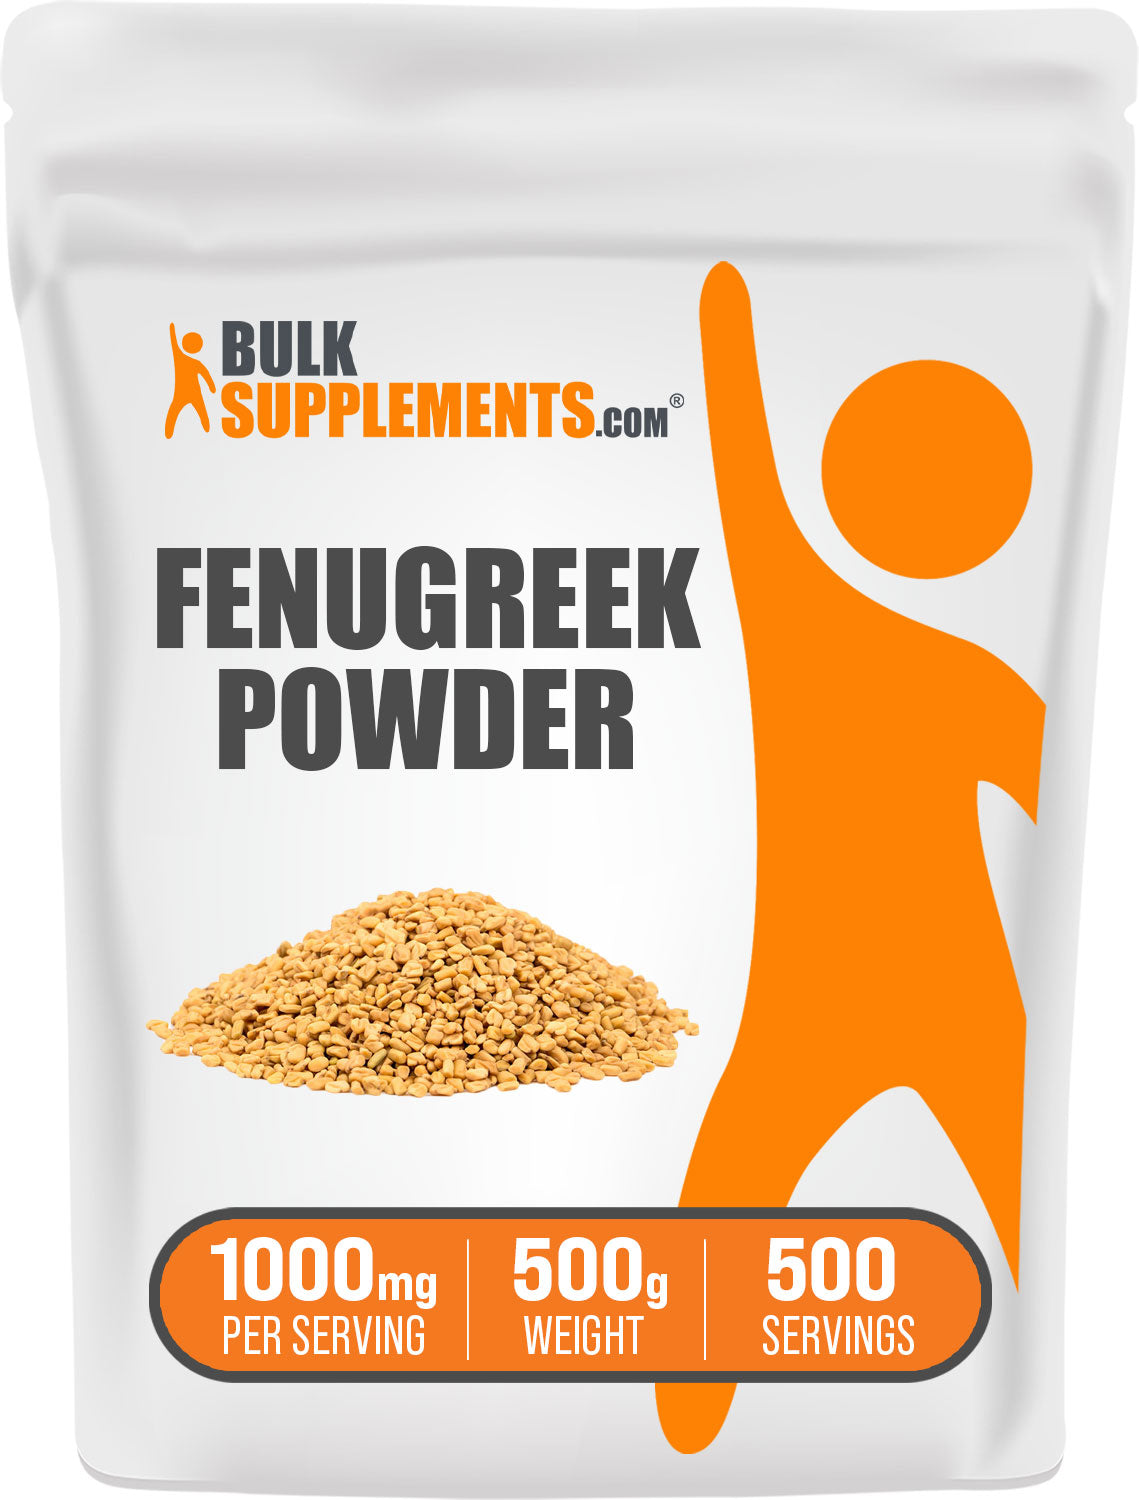 BulkSupplements.com Fenugreek Powder 500g bag image